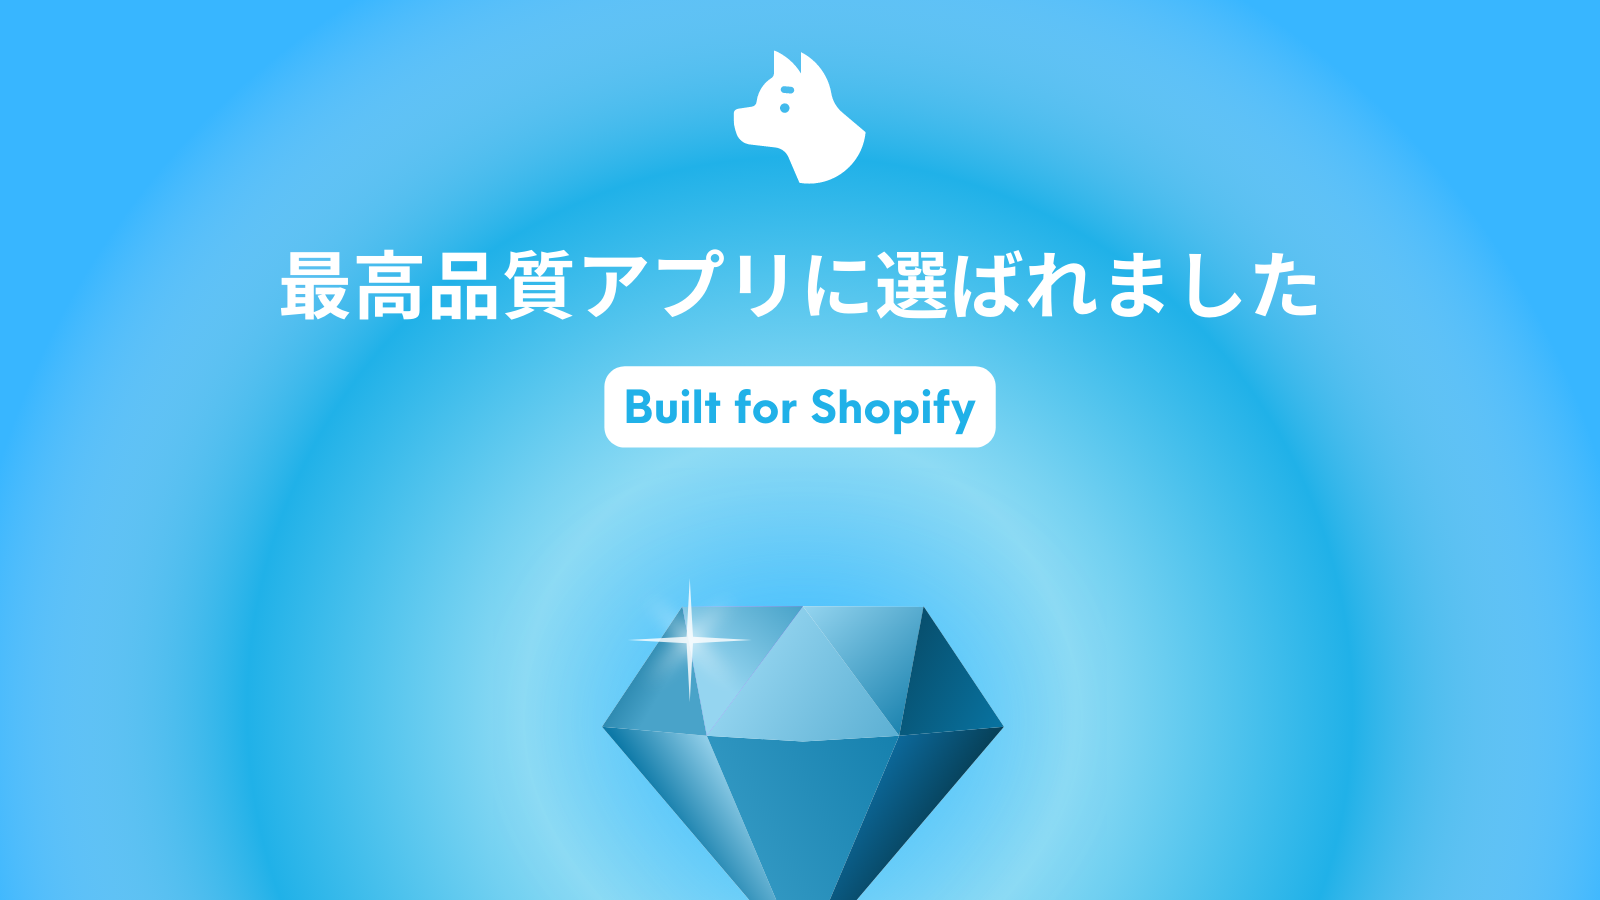 最高品質アプリの証「Built for Shopify」を獲得しました